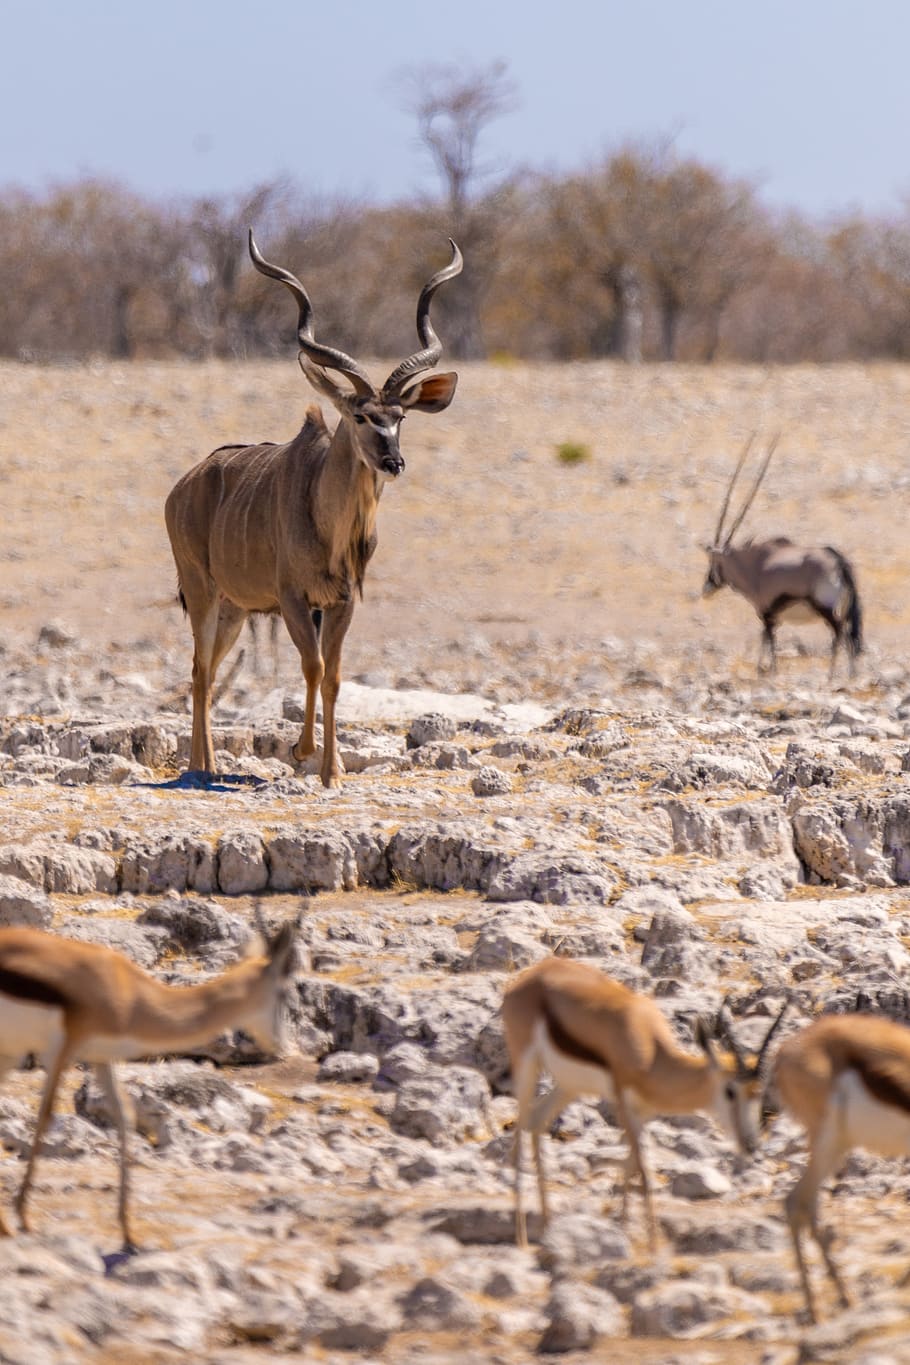 kudu, antelope, animal world, africa, nature, mammal, brown, male, antler, horns